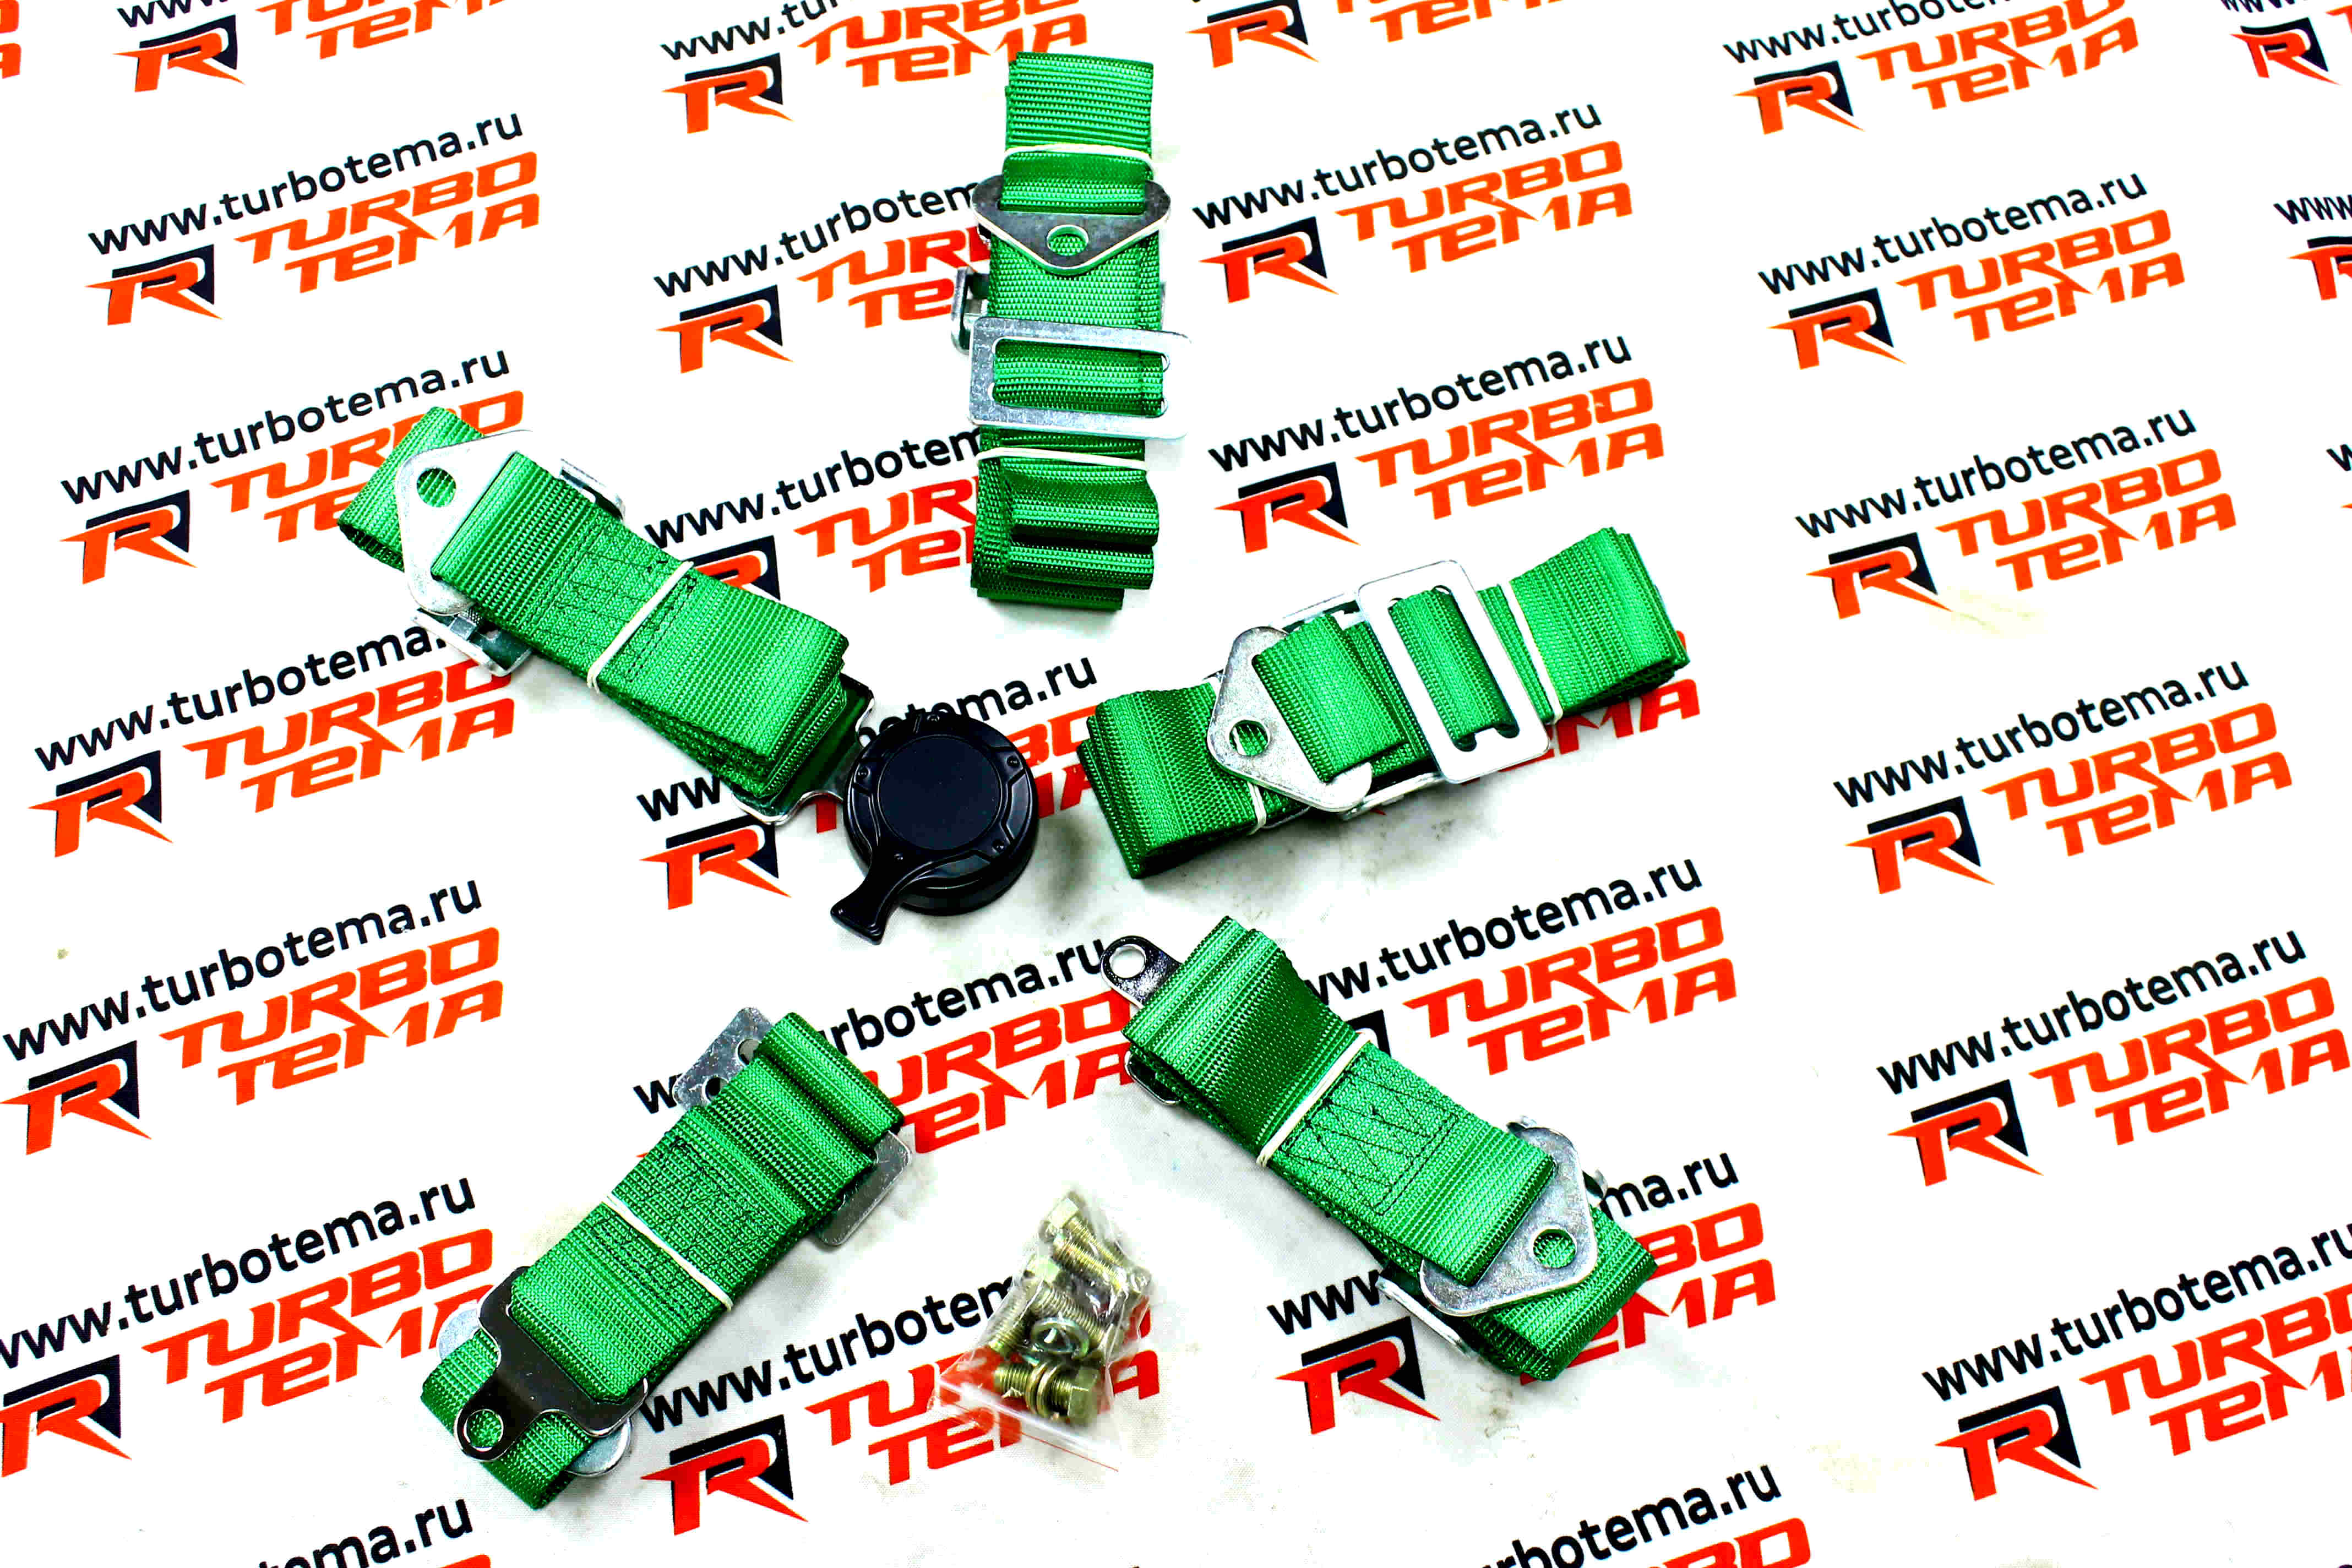 Ремни безопасности "TURBOTEMA" 5-ти точечные, 2" ширина, быстросъемные (зеленые) JBR4001-5